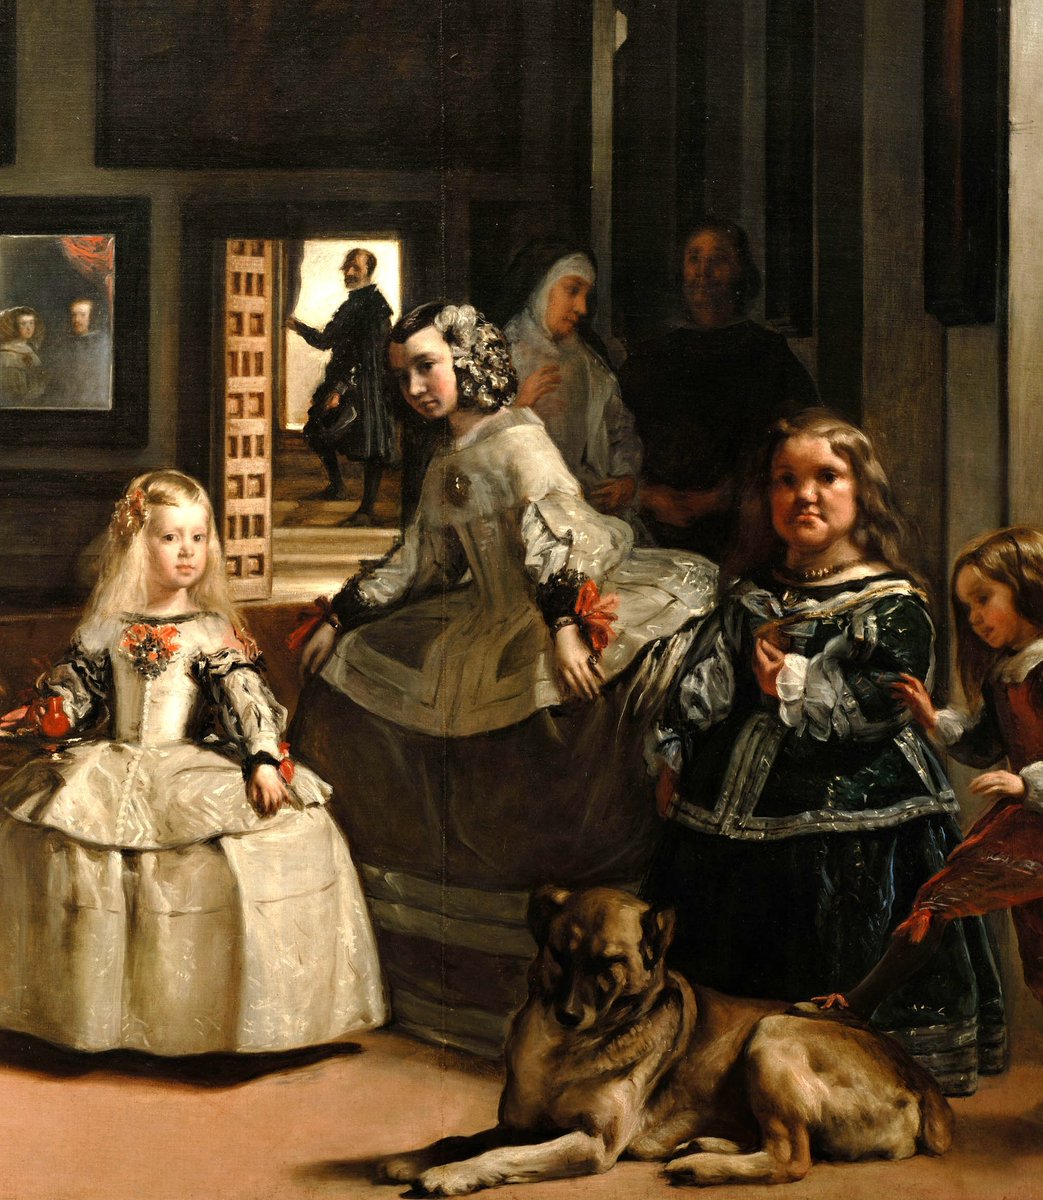 Eines der berühmtesten Bilder der Kunstgeschichte zeigt Maria Haunsin aus Oberösterreich. Diego Velázquez malt die kleinwüchsige Frau 1656 in seinem Bild „Las Meninas“ (Die Hofdamen). Als „Hofzwergin“ unterhält sie im 17. Jahrhundert die spanische Königin. 1/12